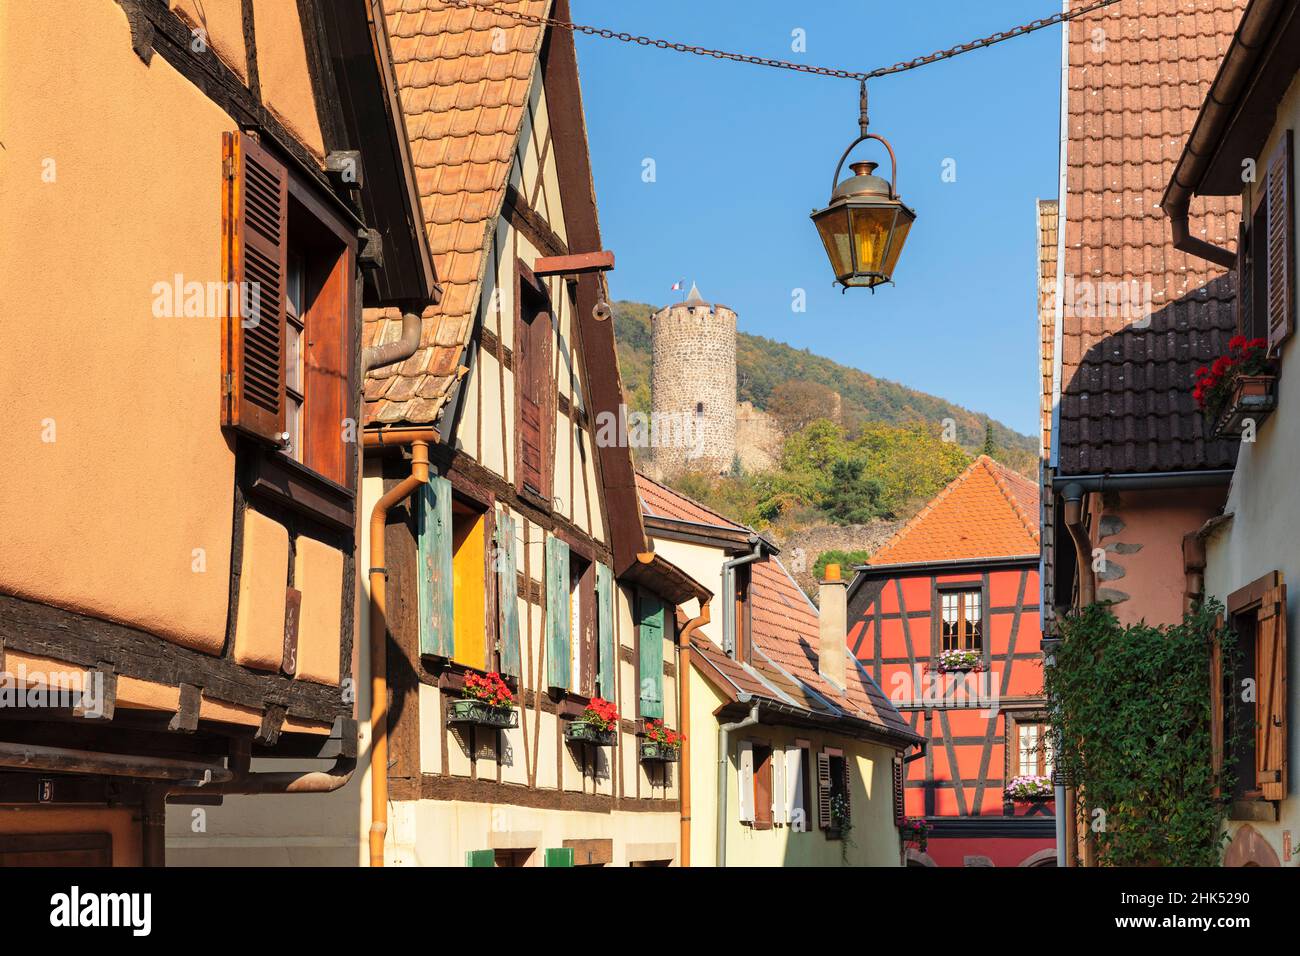 Maisons à colombages et château, Kaysersberg, Alsace, route des vins alsaciens, Haut-Rhin,France, Europe Banque D'Images